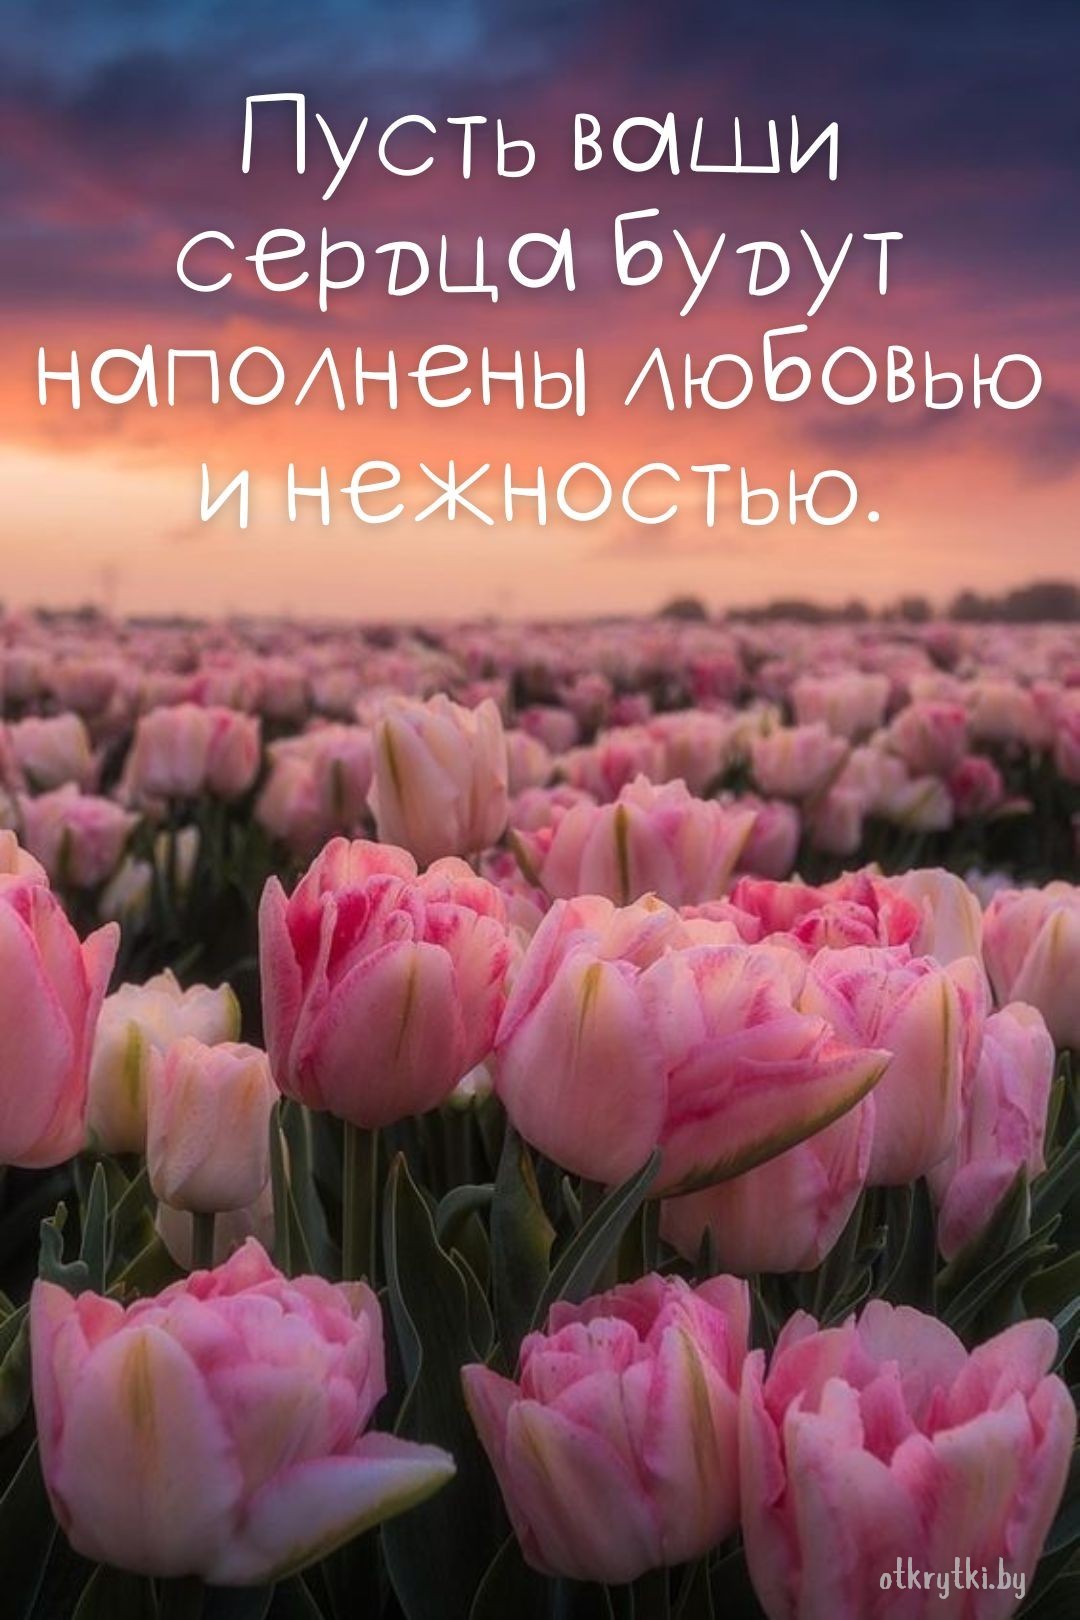 Виртуальная открытка с пожеланием с цветами